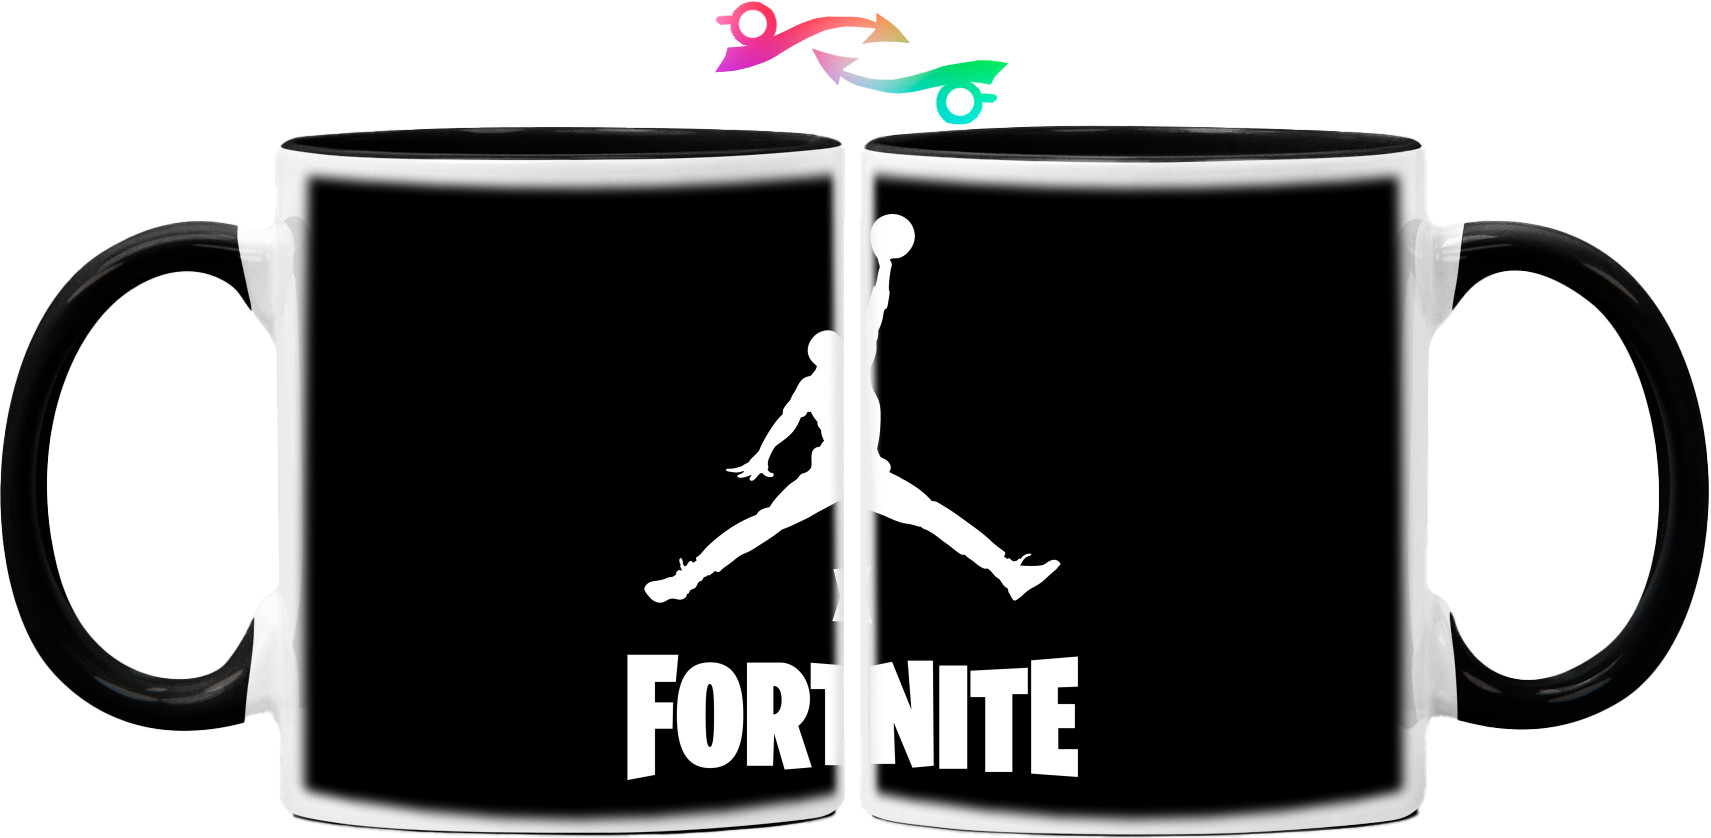 Fortnite - Кружка - Jordan x Fortnite (2) - Mfest